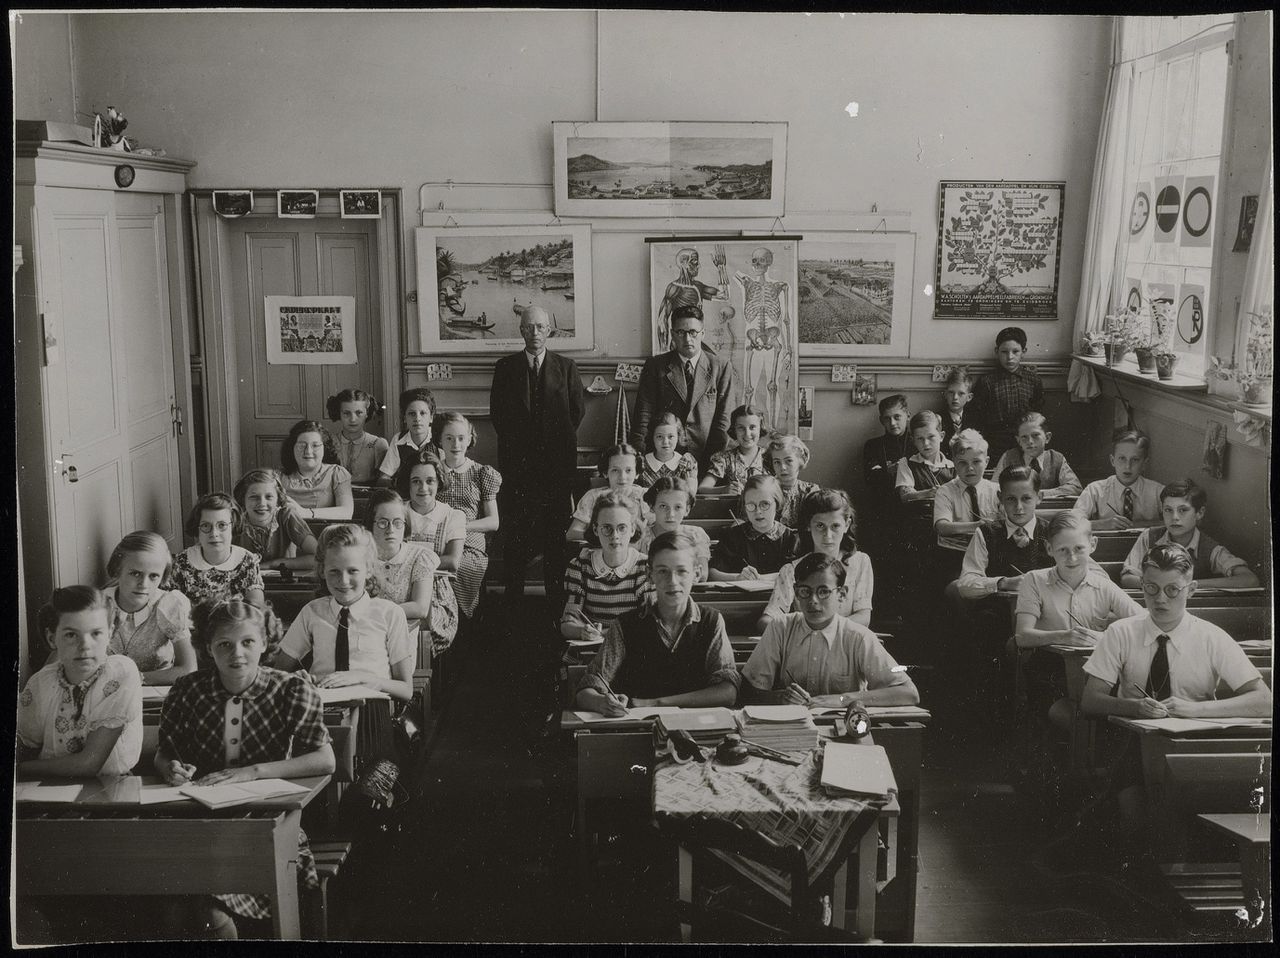 School op de Herengracht in Amsterdam. Foto op 11 juli 1940 aangeboden door de oudercommissie van de school.